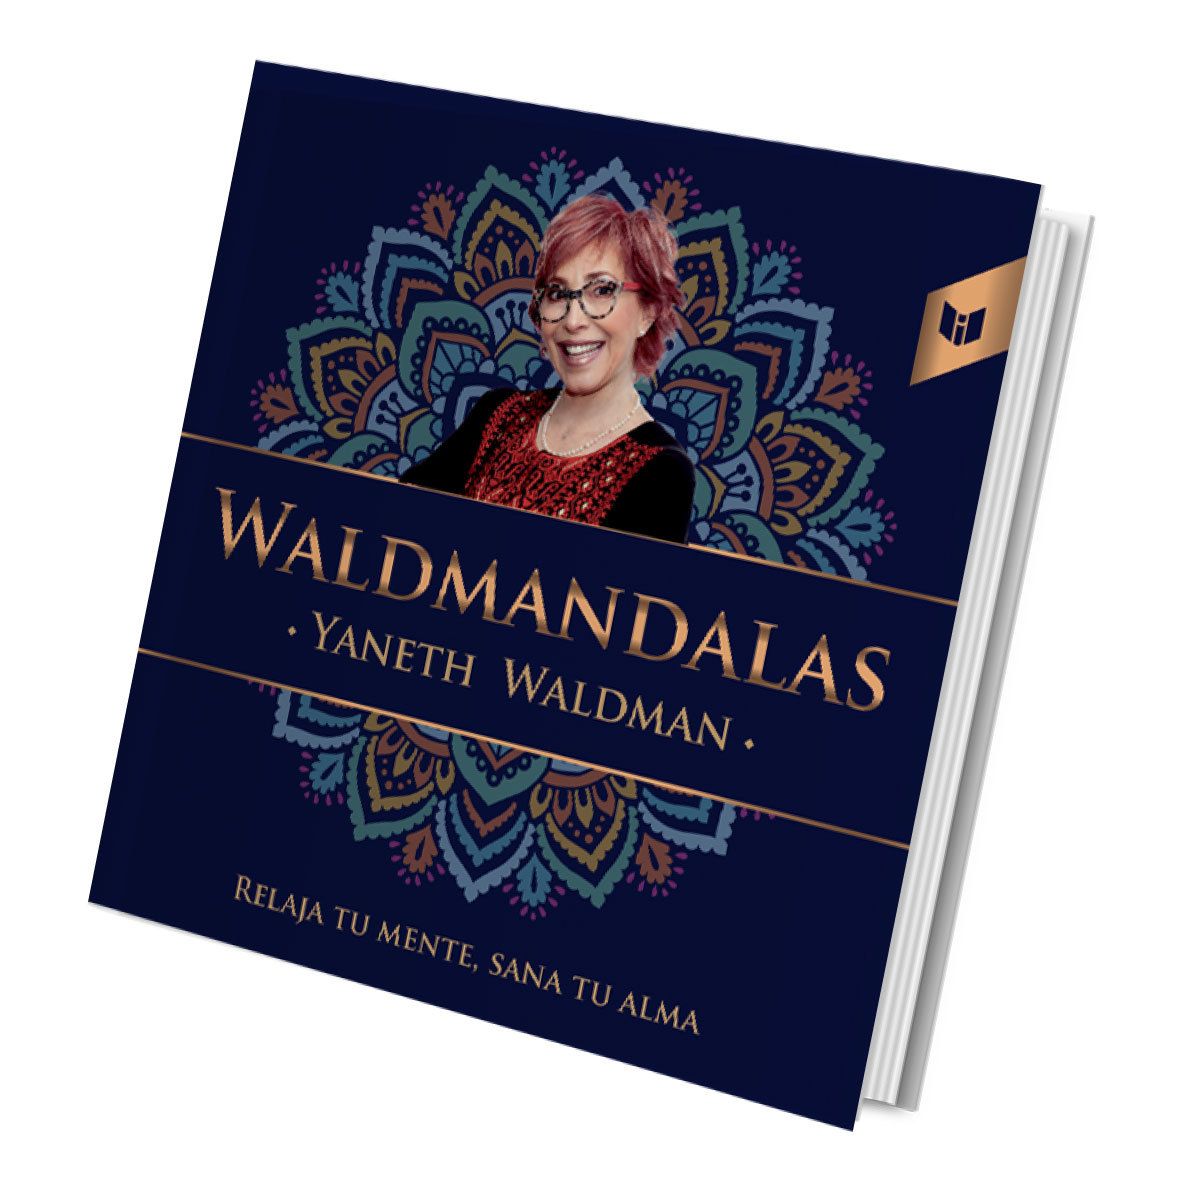 Waldmandalas - Libro para Colorear Mandalas